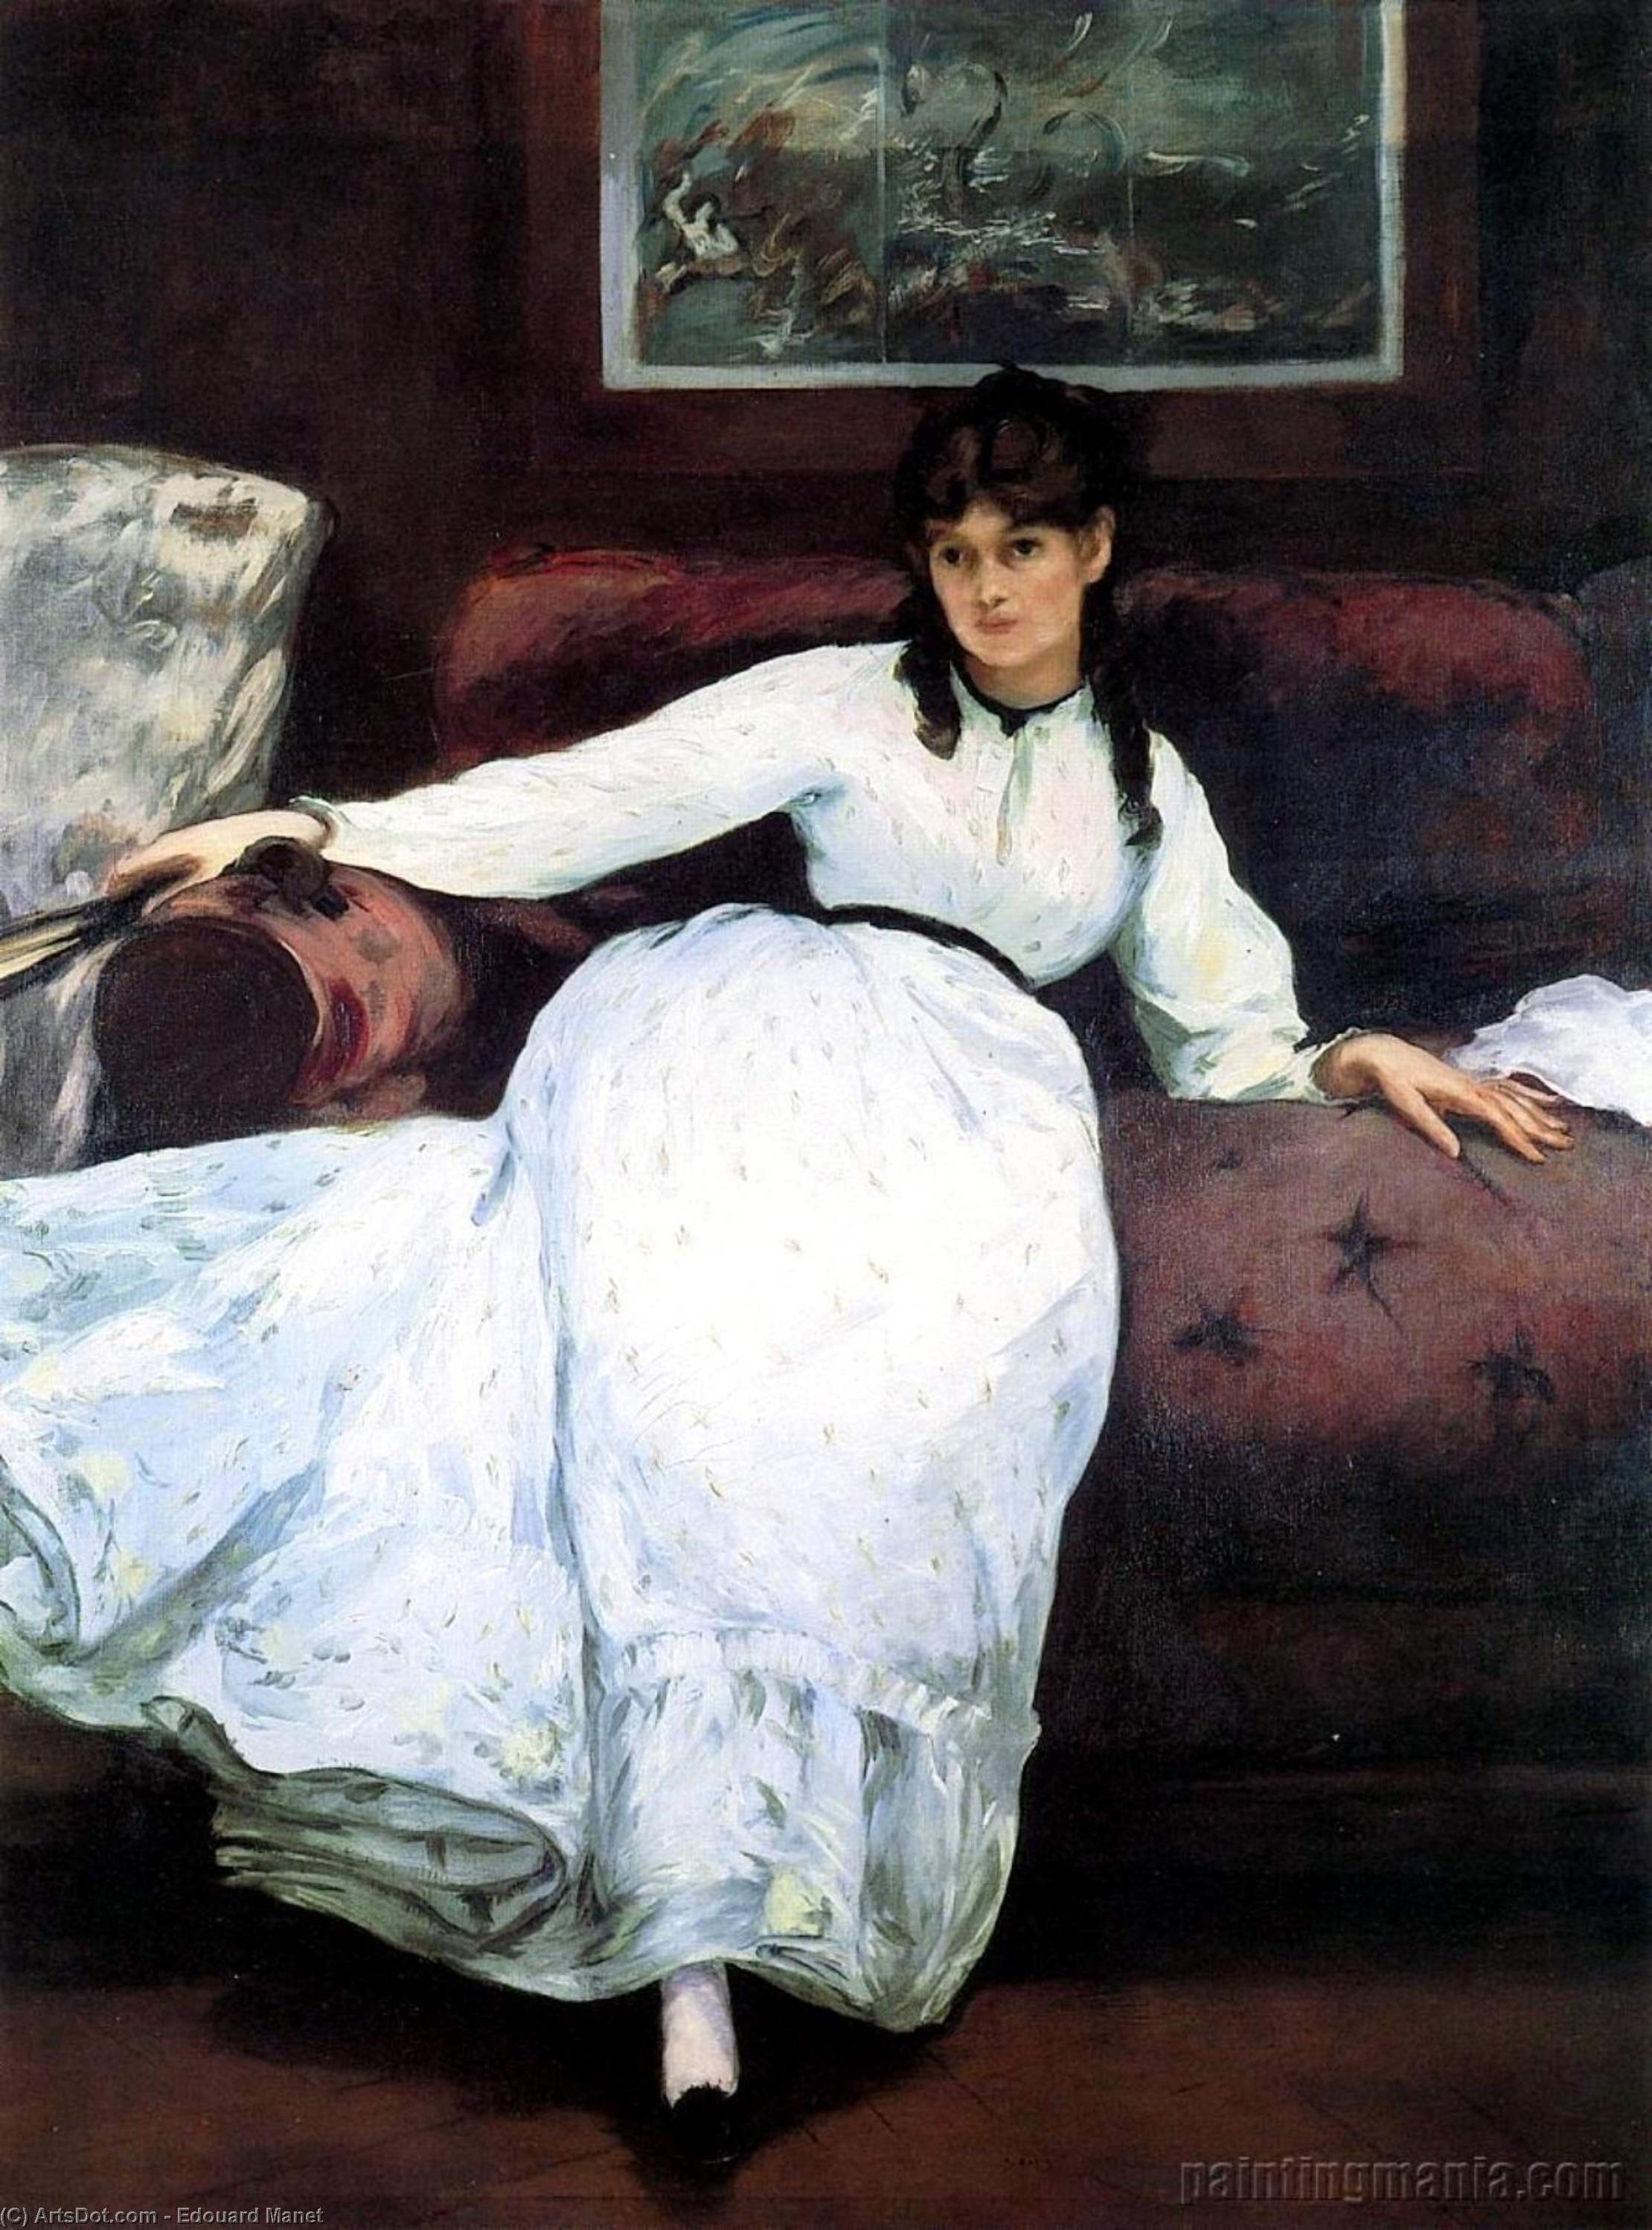 WikiOO.org - אנציקלופדיה לאמנויות יפות - ציור, יצירות אמנות Edouard Manet - The Rest, portrait of Berthe Morisot